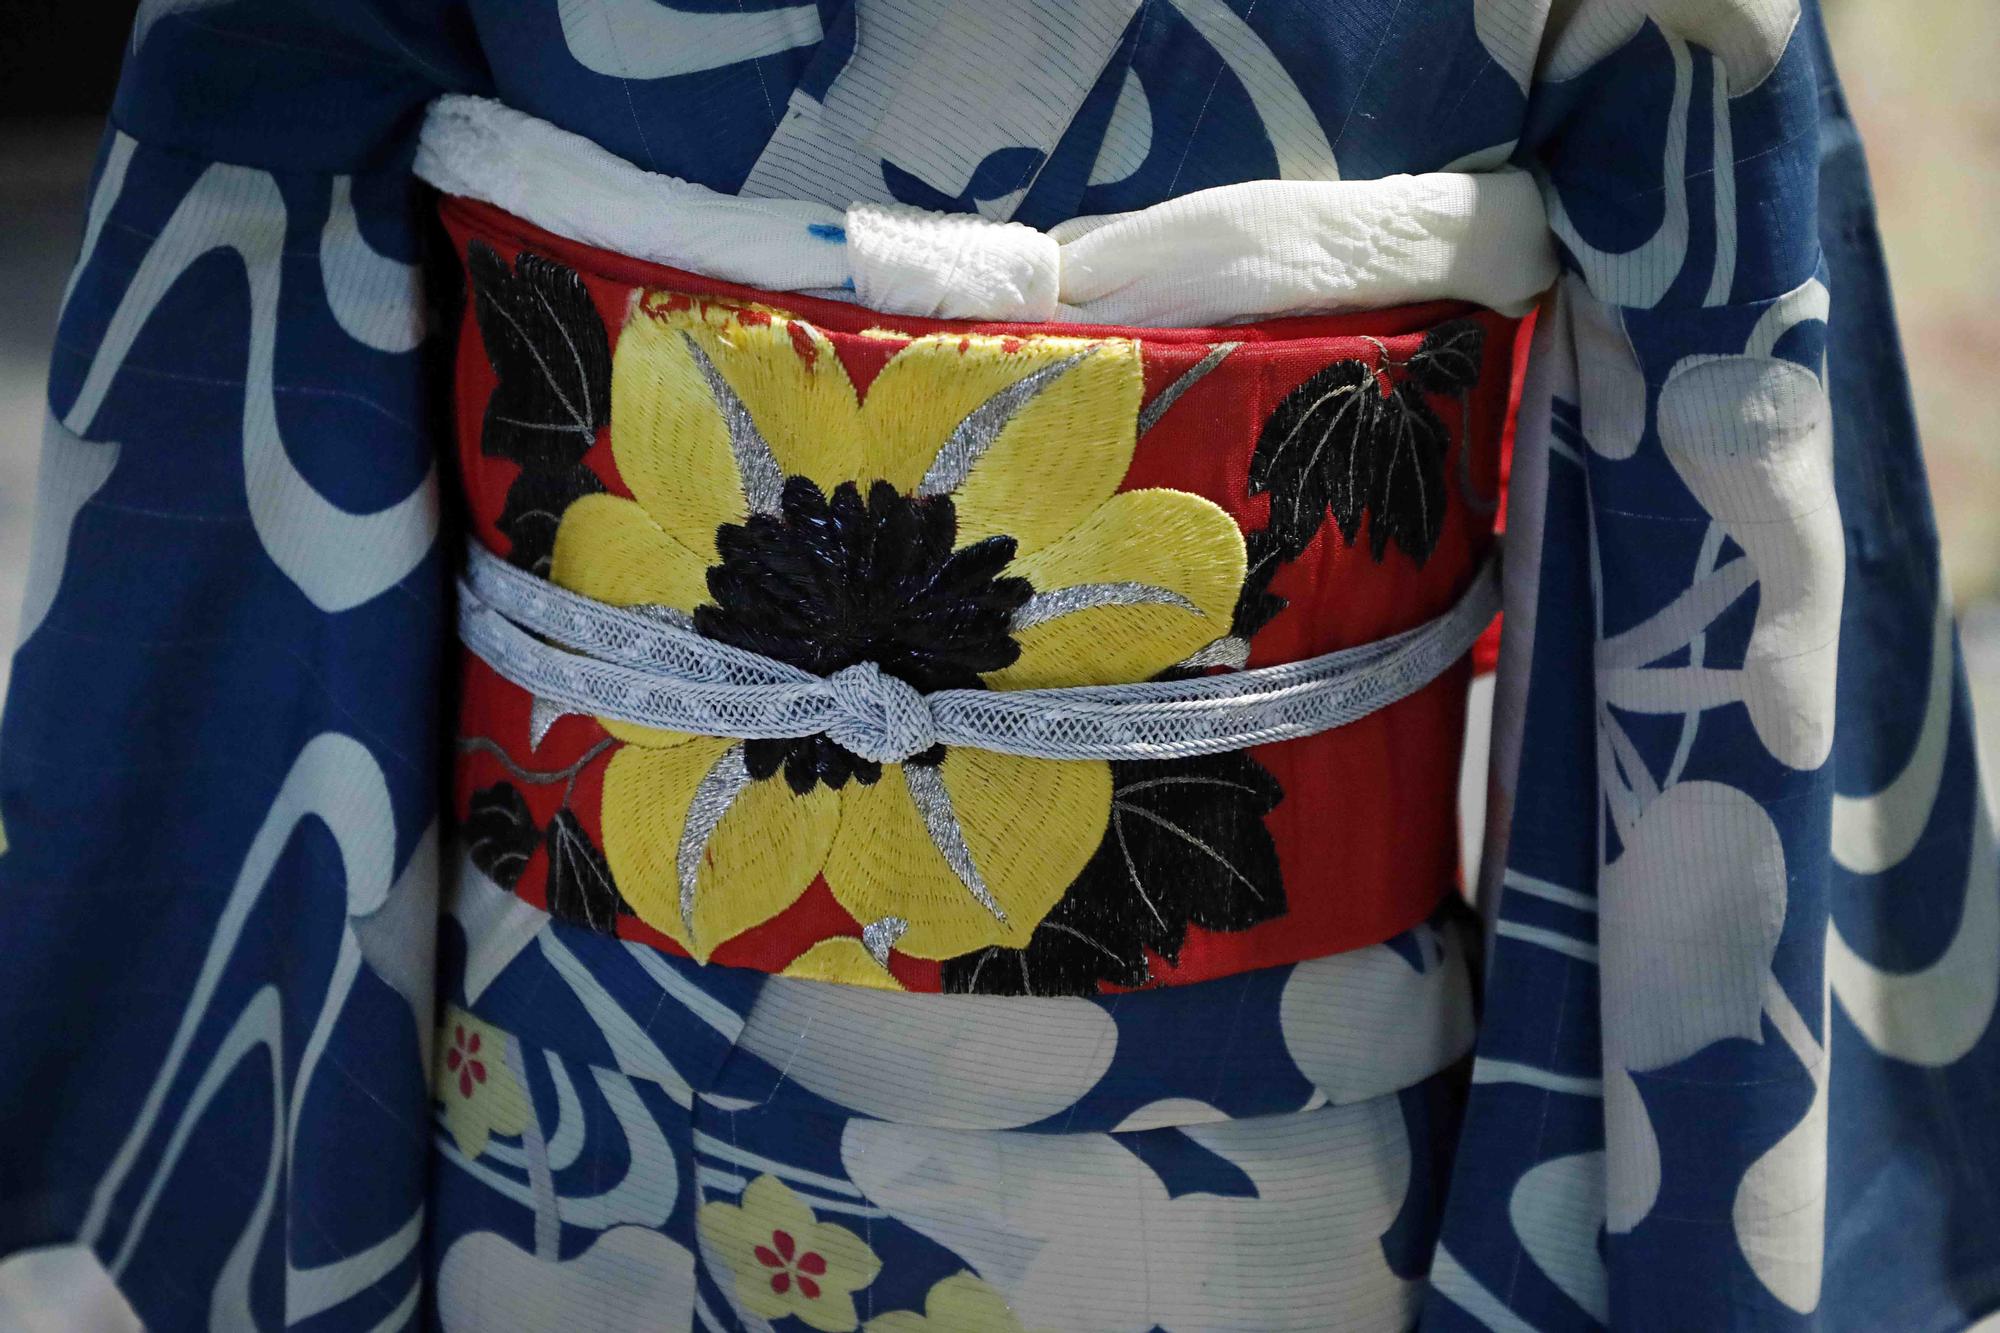 El Museo de la Seda nos descubre la historia del kimono